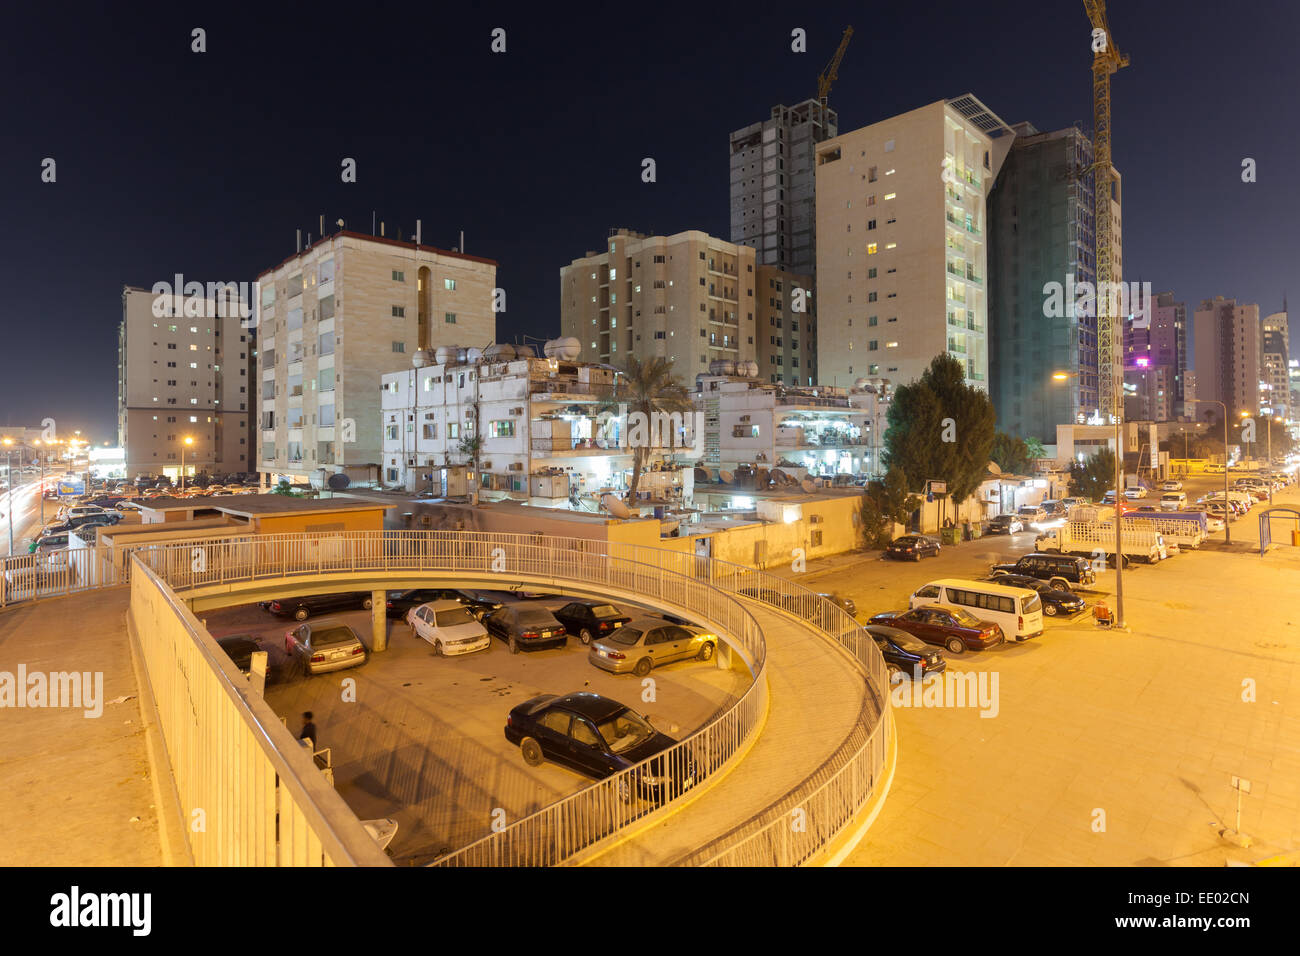 Les bâtiments résidentiels dans la ville de Koweït dans la nuit Banque D'Images